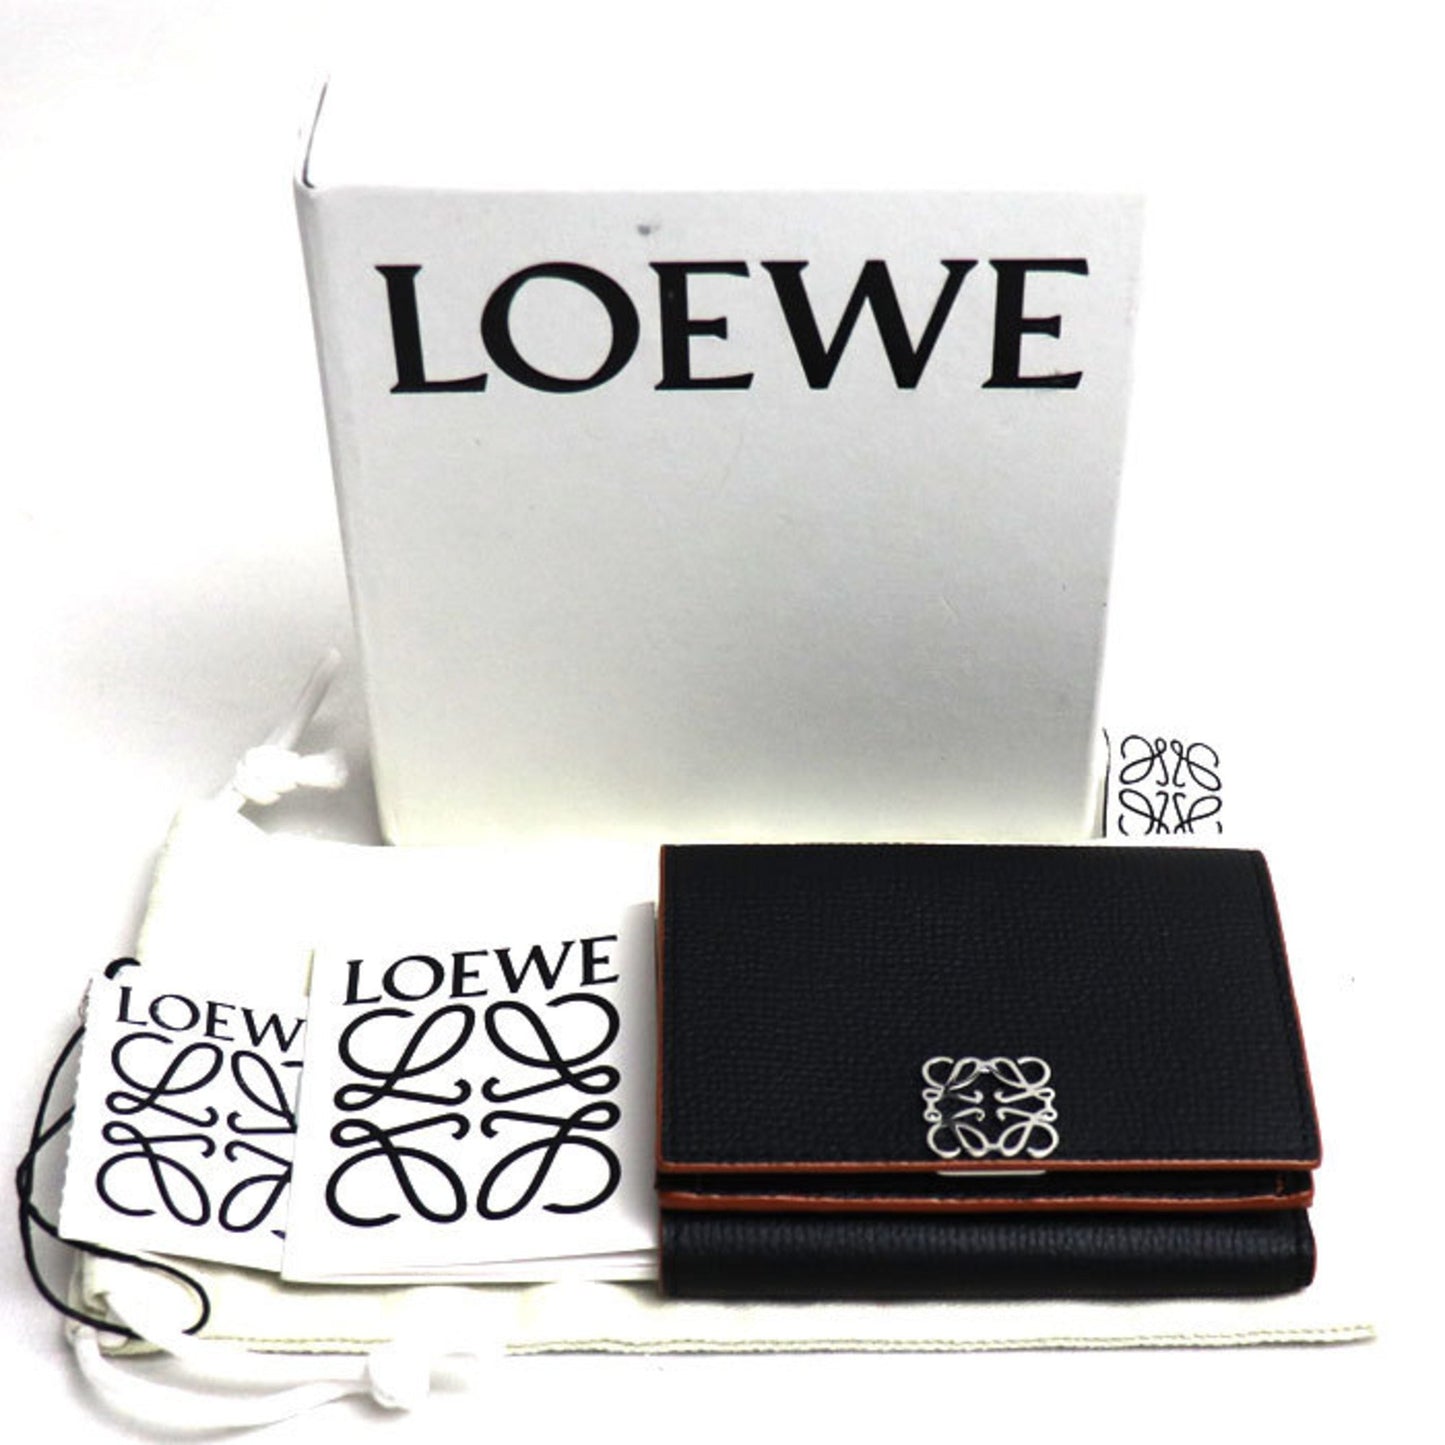 Loewe Women's Black Leather Cardholder in Black